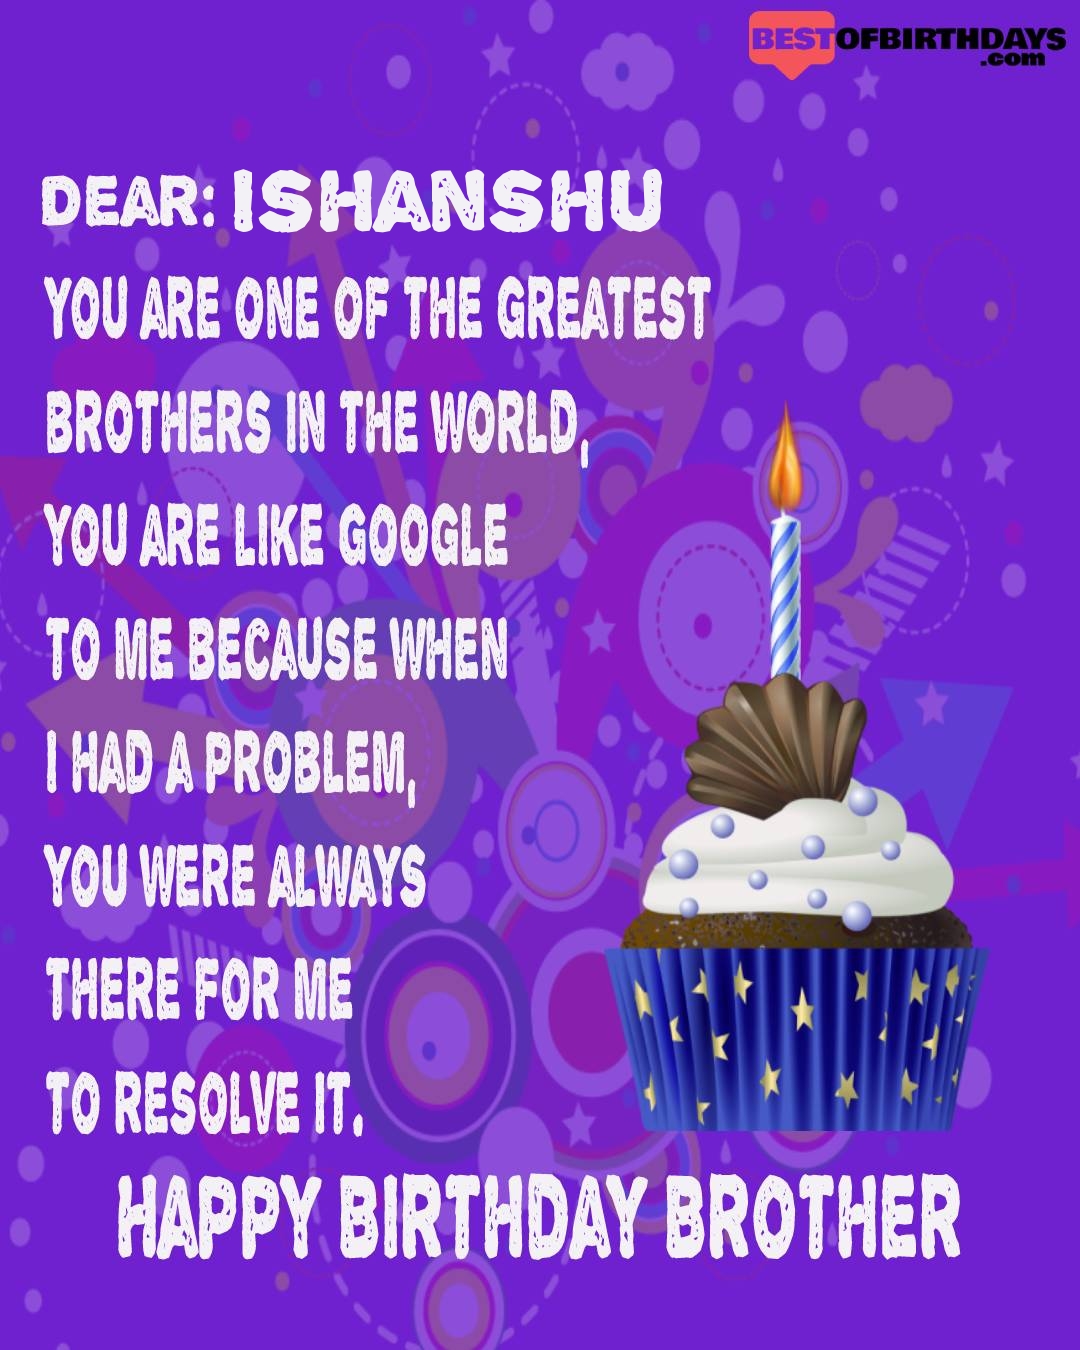 Happy birthday ishanshu bhai brother bro